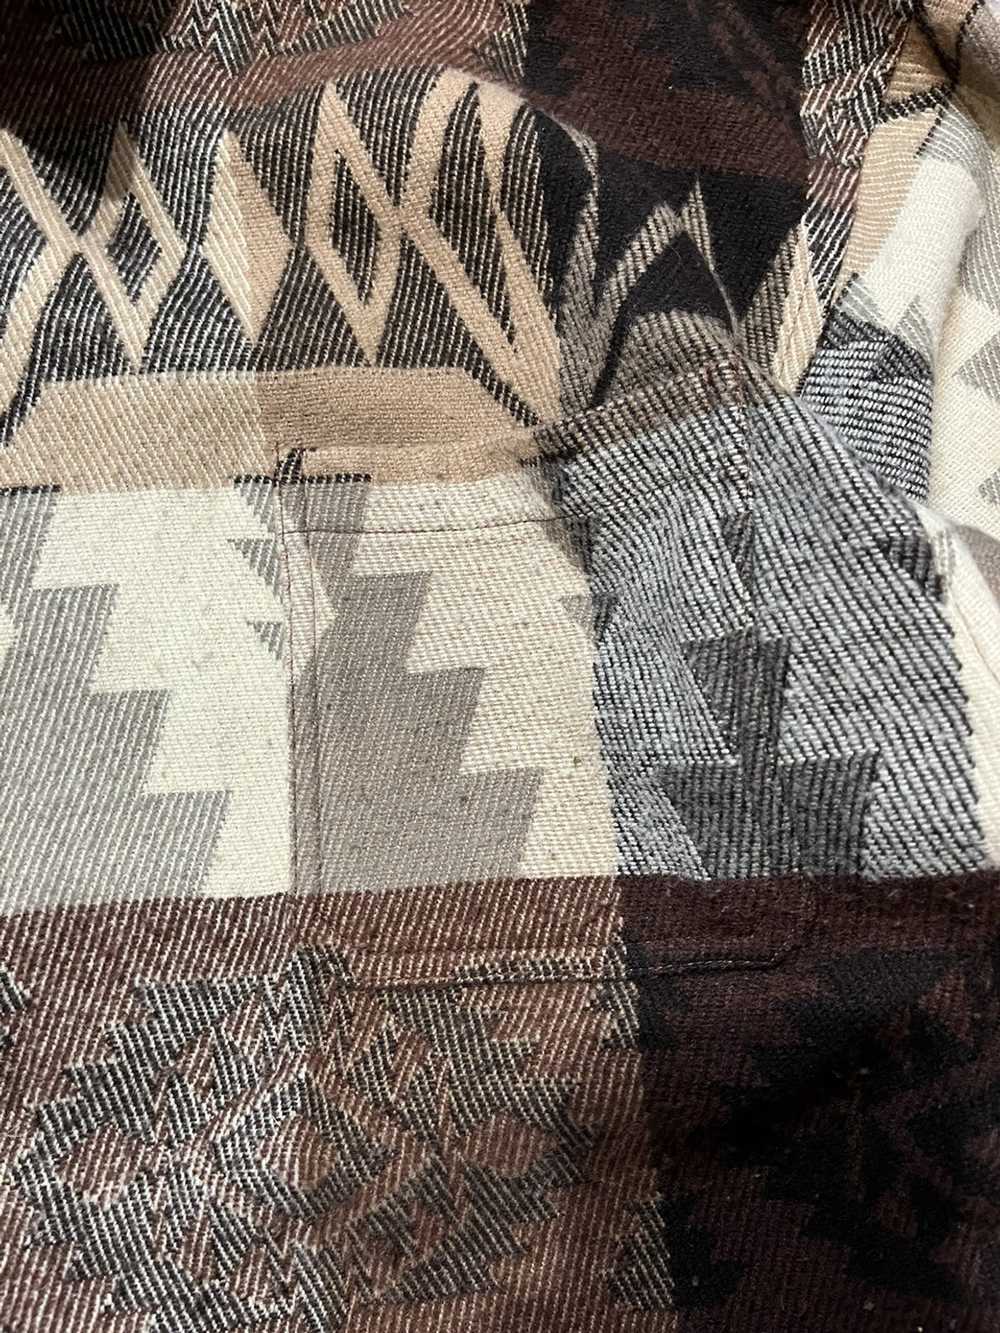 Vintage Vintage Aztec pattern shirt - image 5